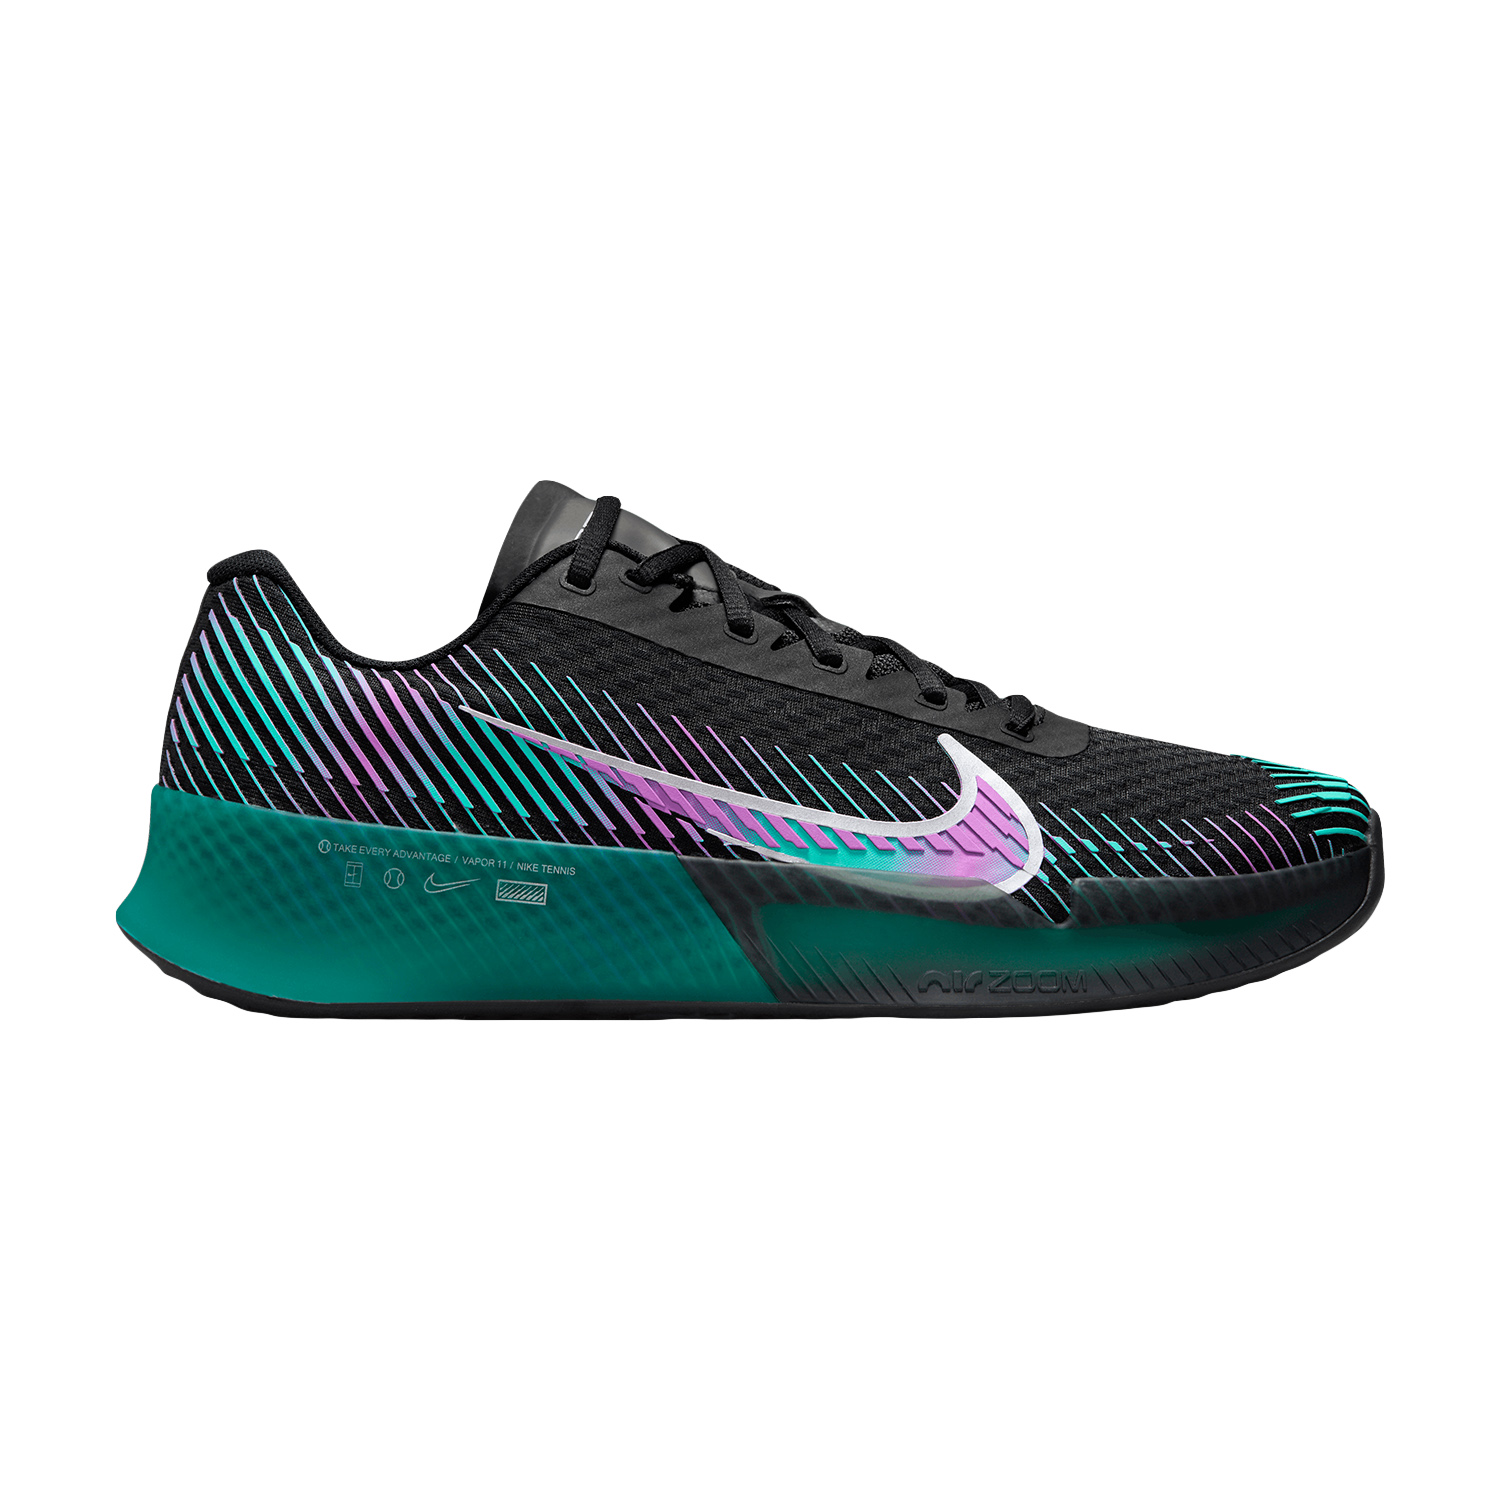 Nike Court Air Zoom Vapor 11 HC Men's Tennis Shoes - Black